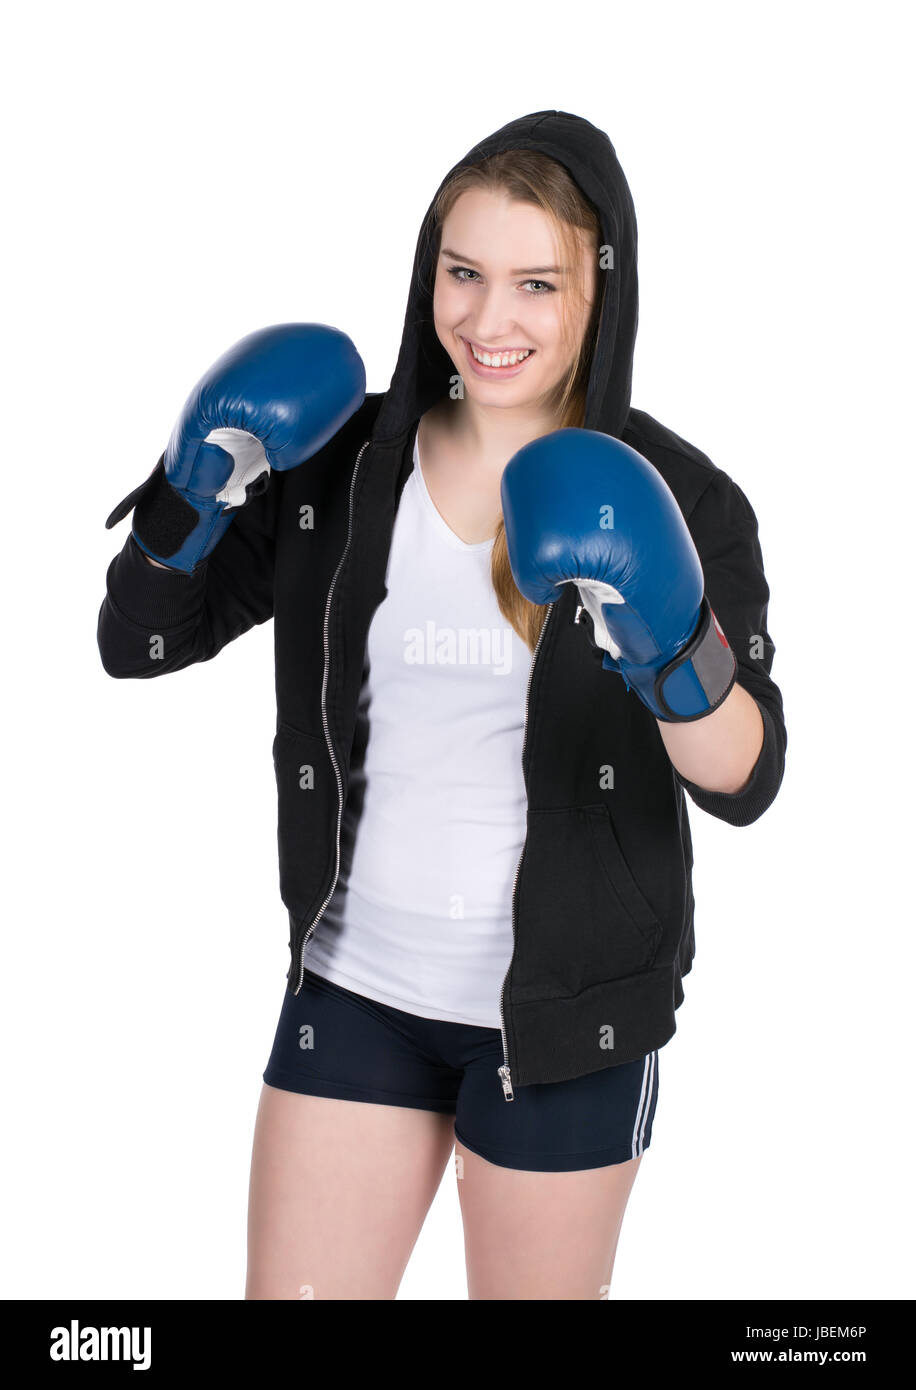 Freigestelltes Foto einer jungen lächelden Boxerin im Kapuzenpulli und mit blauen Boxhandschuhen Stock Photo